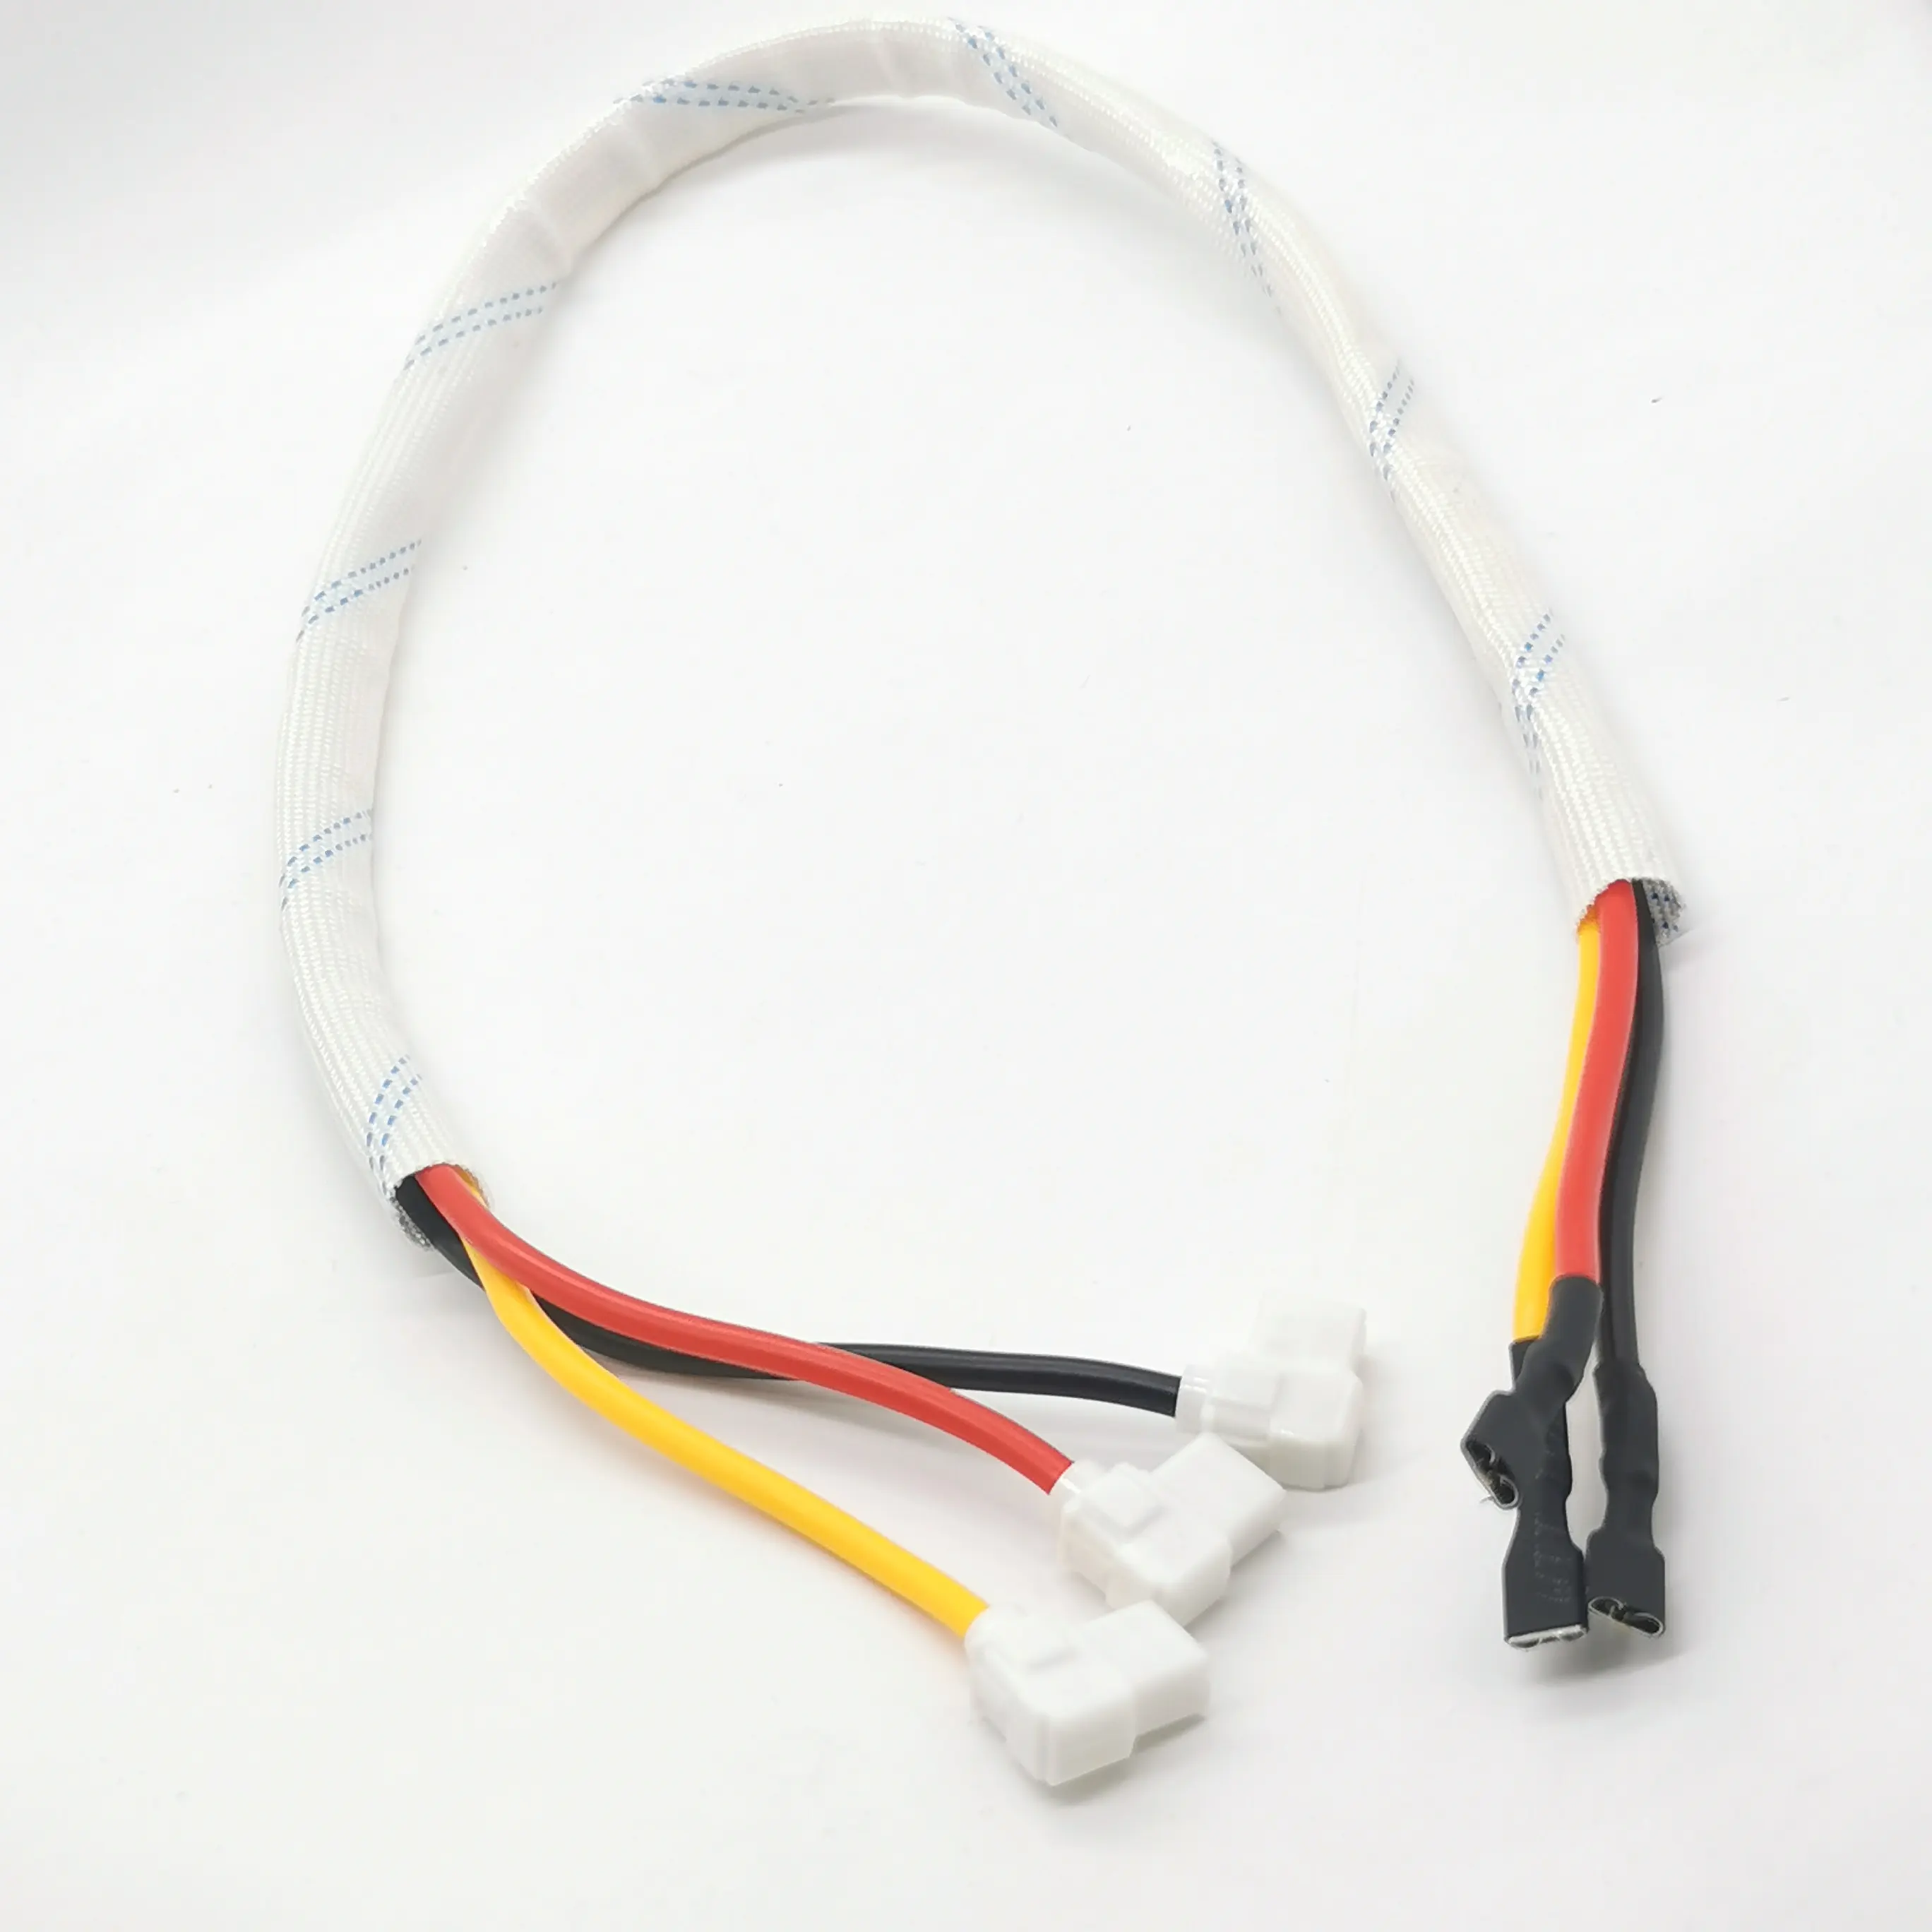 Aire acondicionado unidad externa compresor conexión 2/3P condensador Cable de inicio adaptador mazo de cables